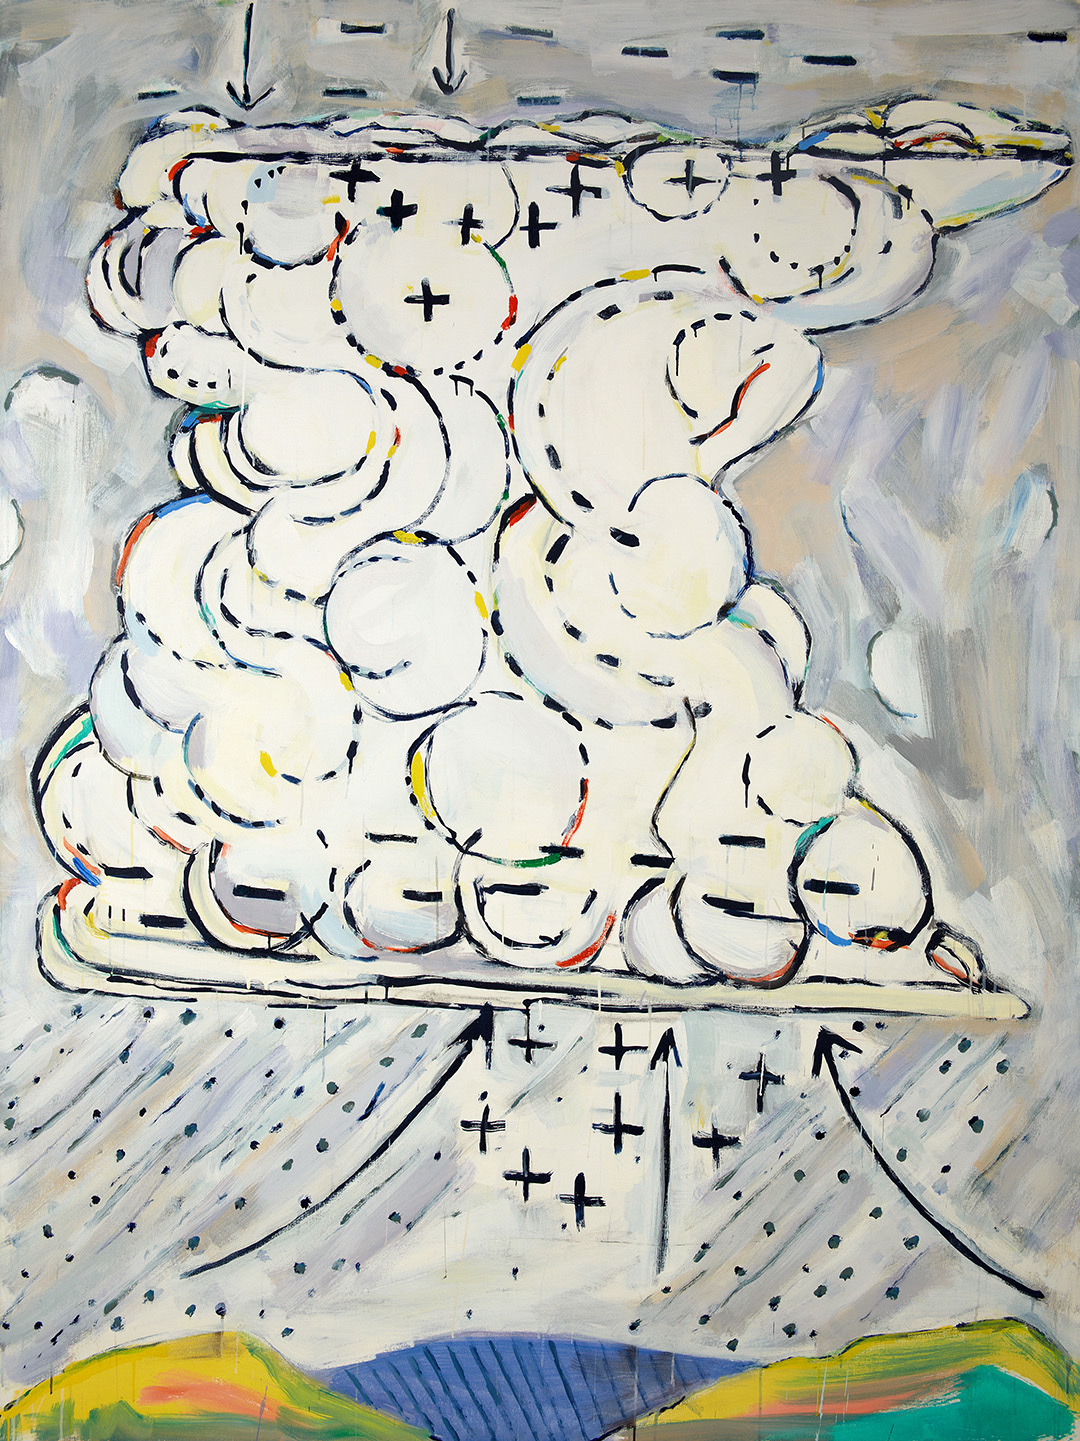 Paterson Ewen, Thunder Cloud as Generator #2 (Nuage orageux comme générateur #2), 1971